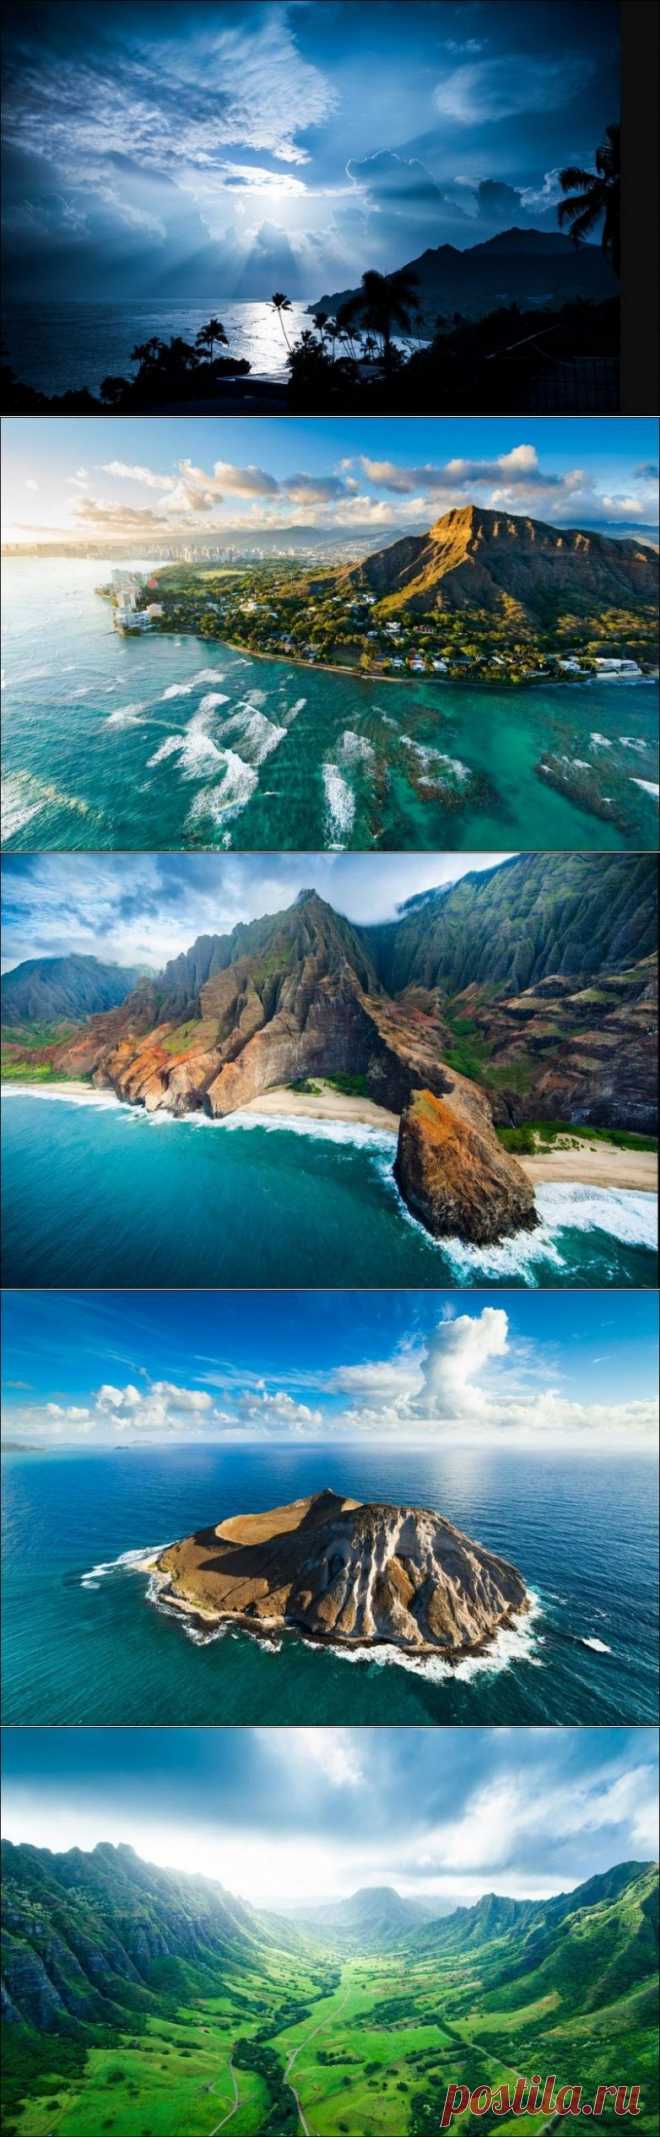 Гавайская красота / Всё самое лучшее из интернета